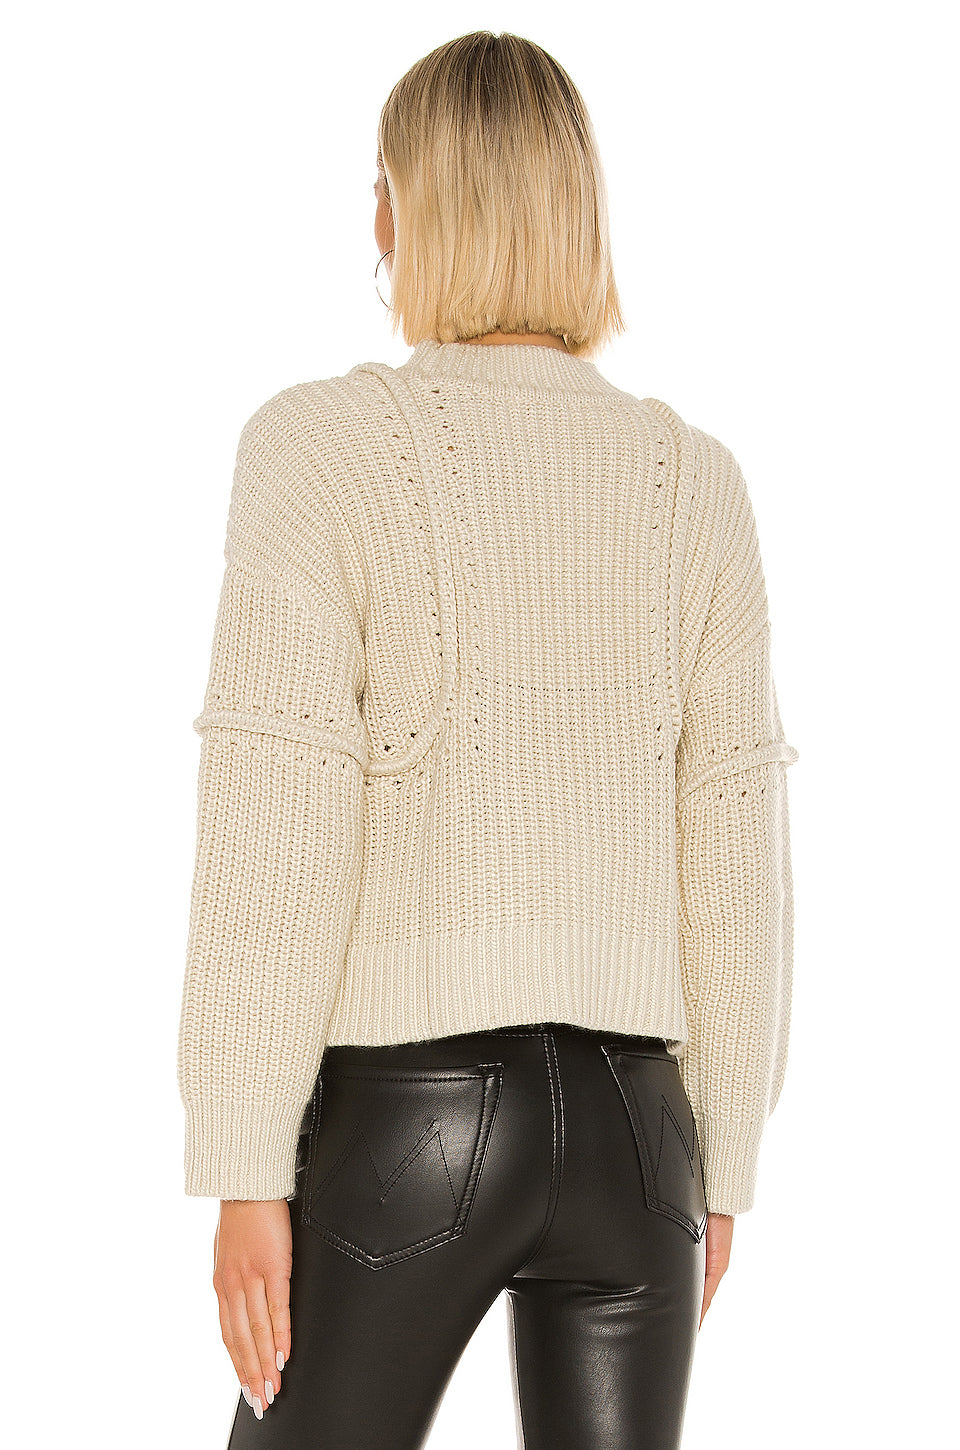 Skylla Sweater in OATMEAL